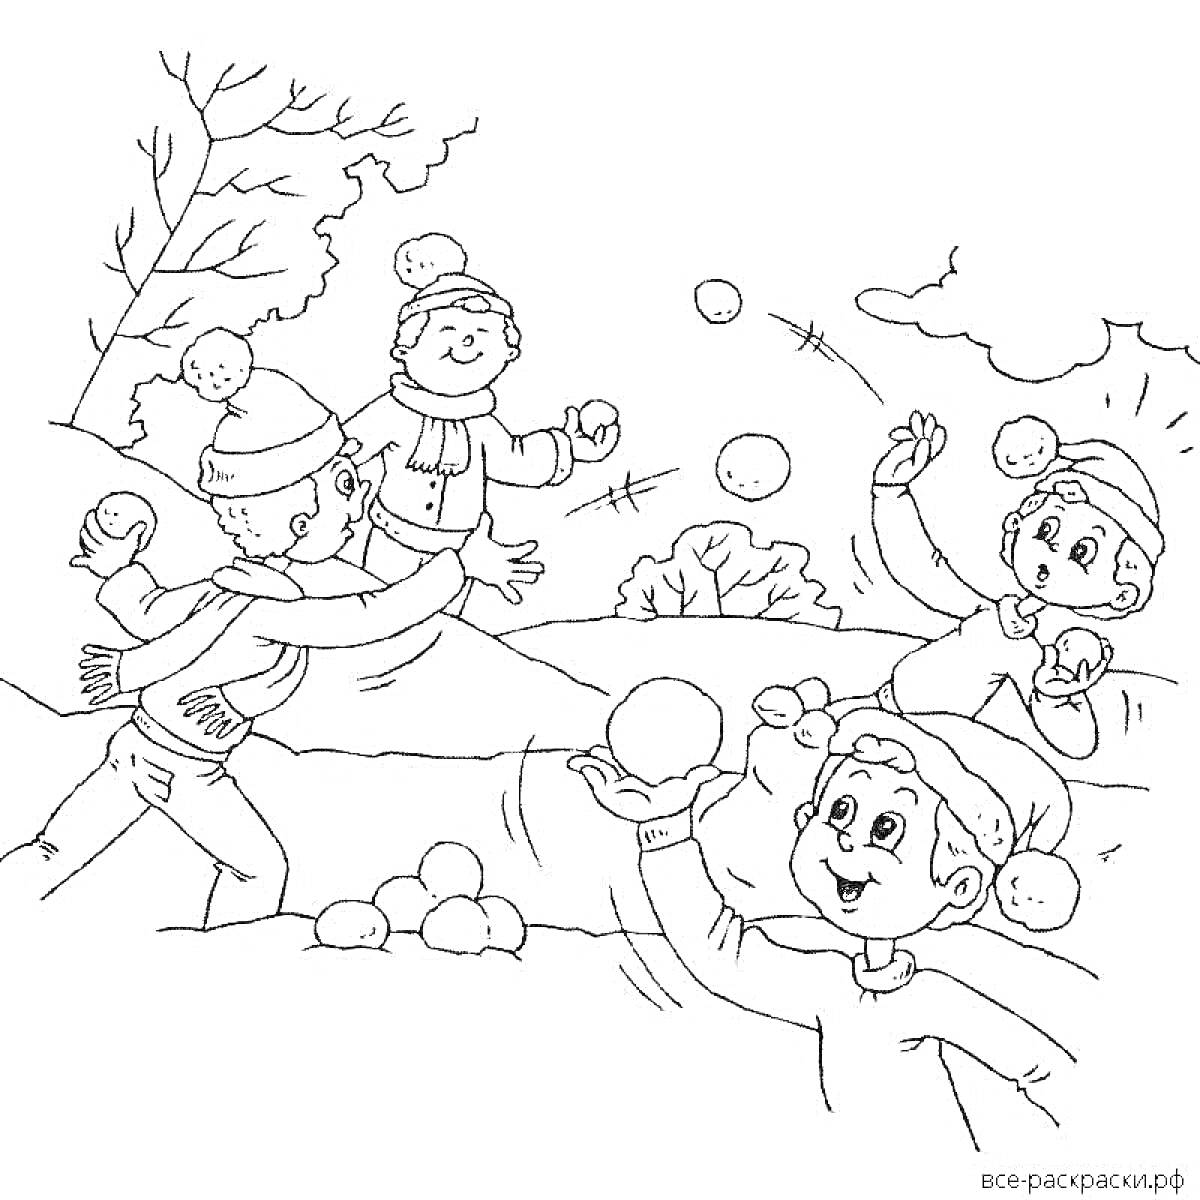 Раскраска дети в тёплой одежде играют в снежки зимой